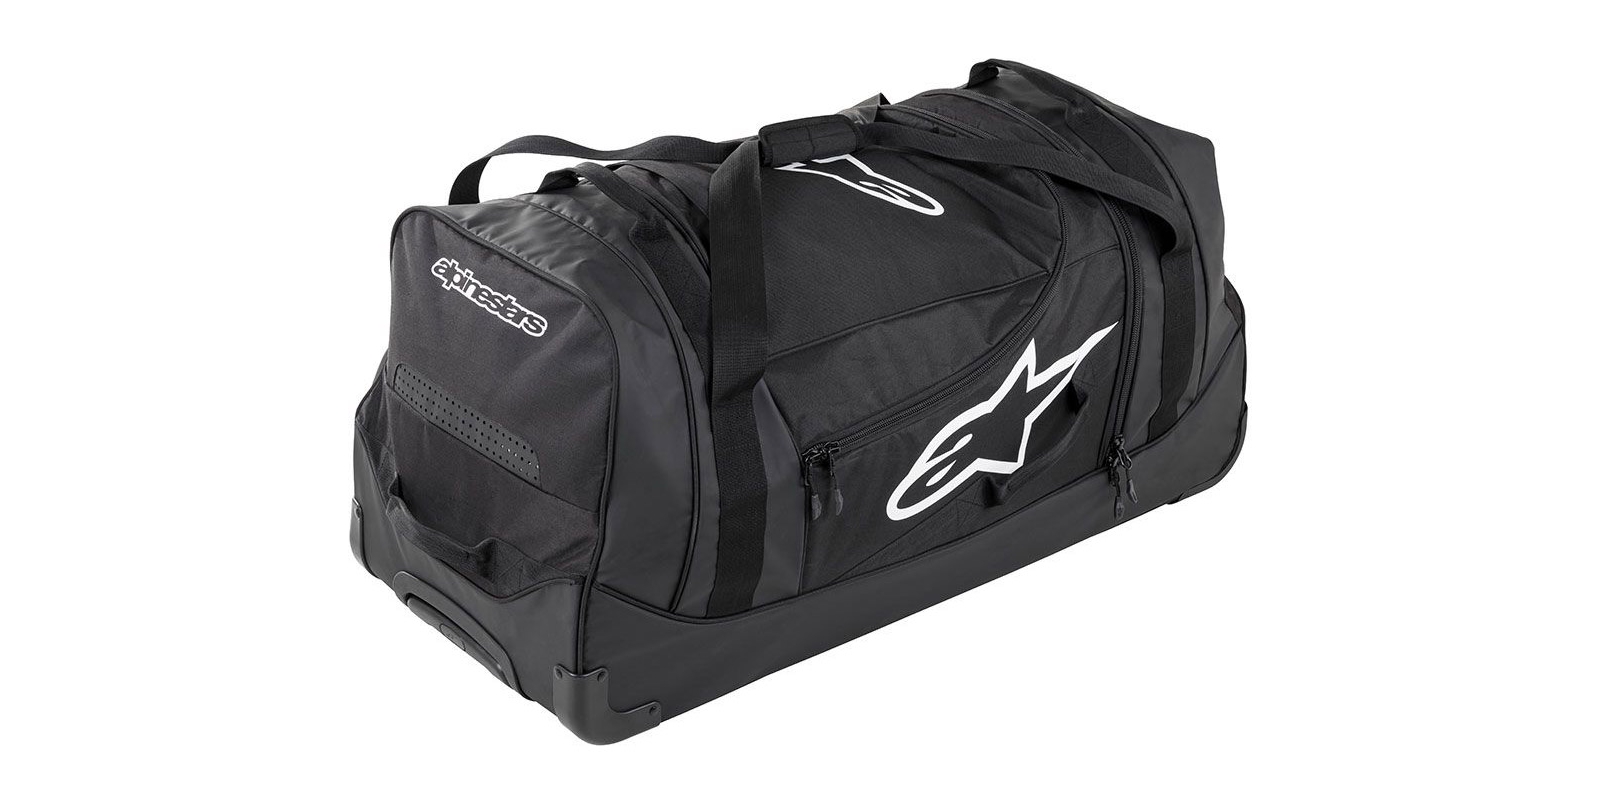 Obrázek produktu cestovní taška KOMODO, ALPINESTARS (černá/antracitová/bílá, objem 150 l) 6106118-140